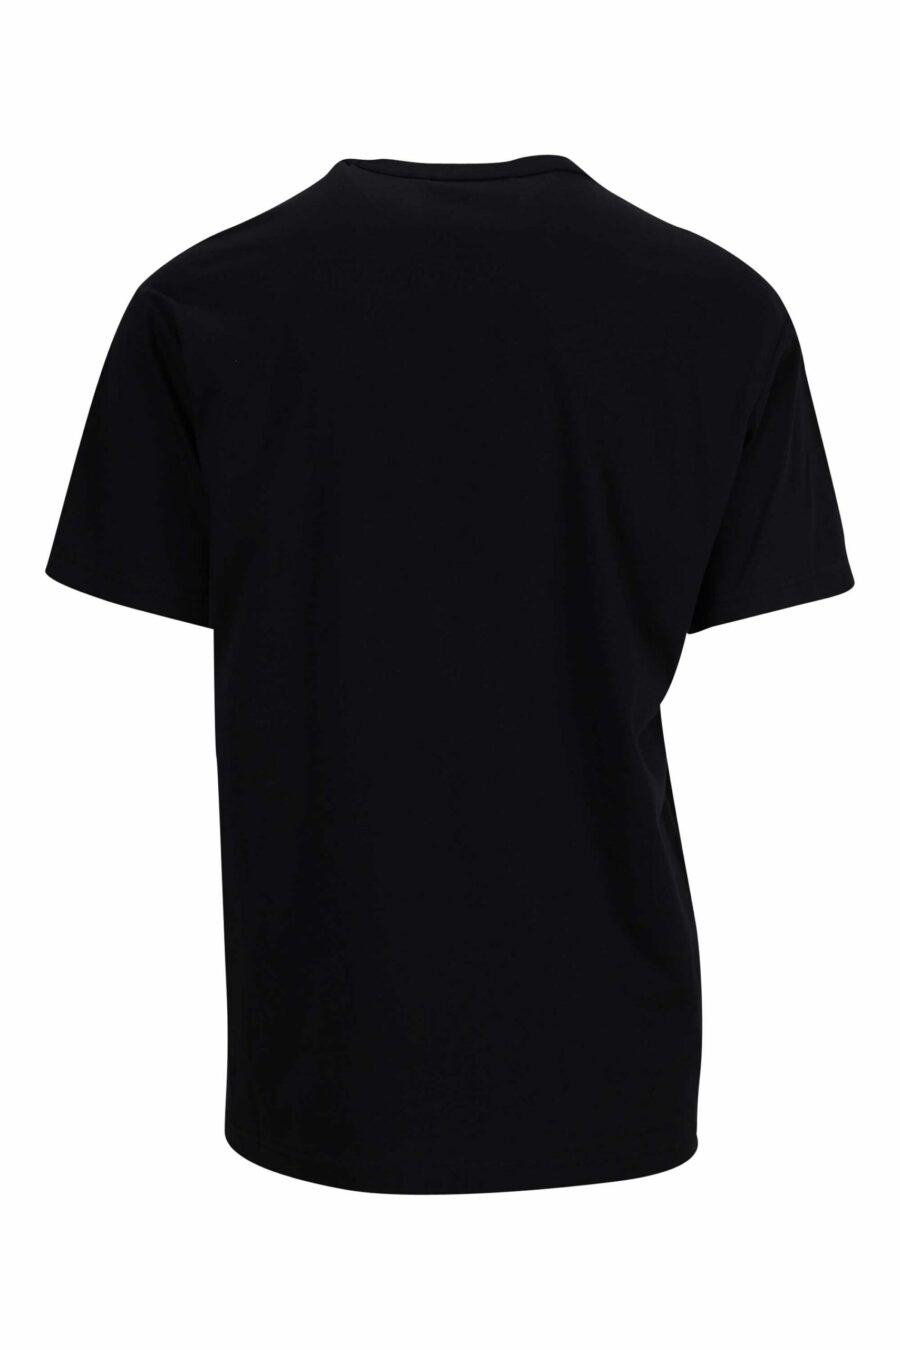 T-shirt noir avec "emblème" maxilogo circulaire doré - 8052019338058 1 à l'échelle